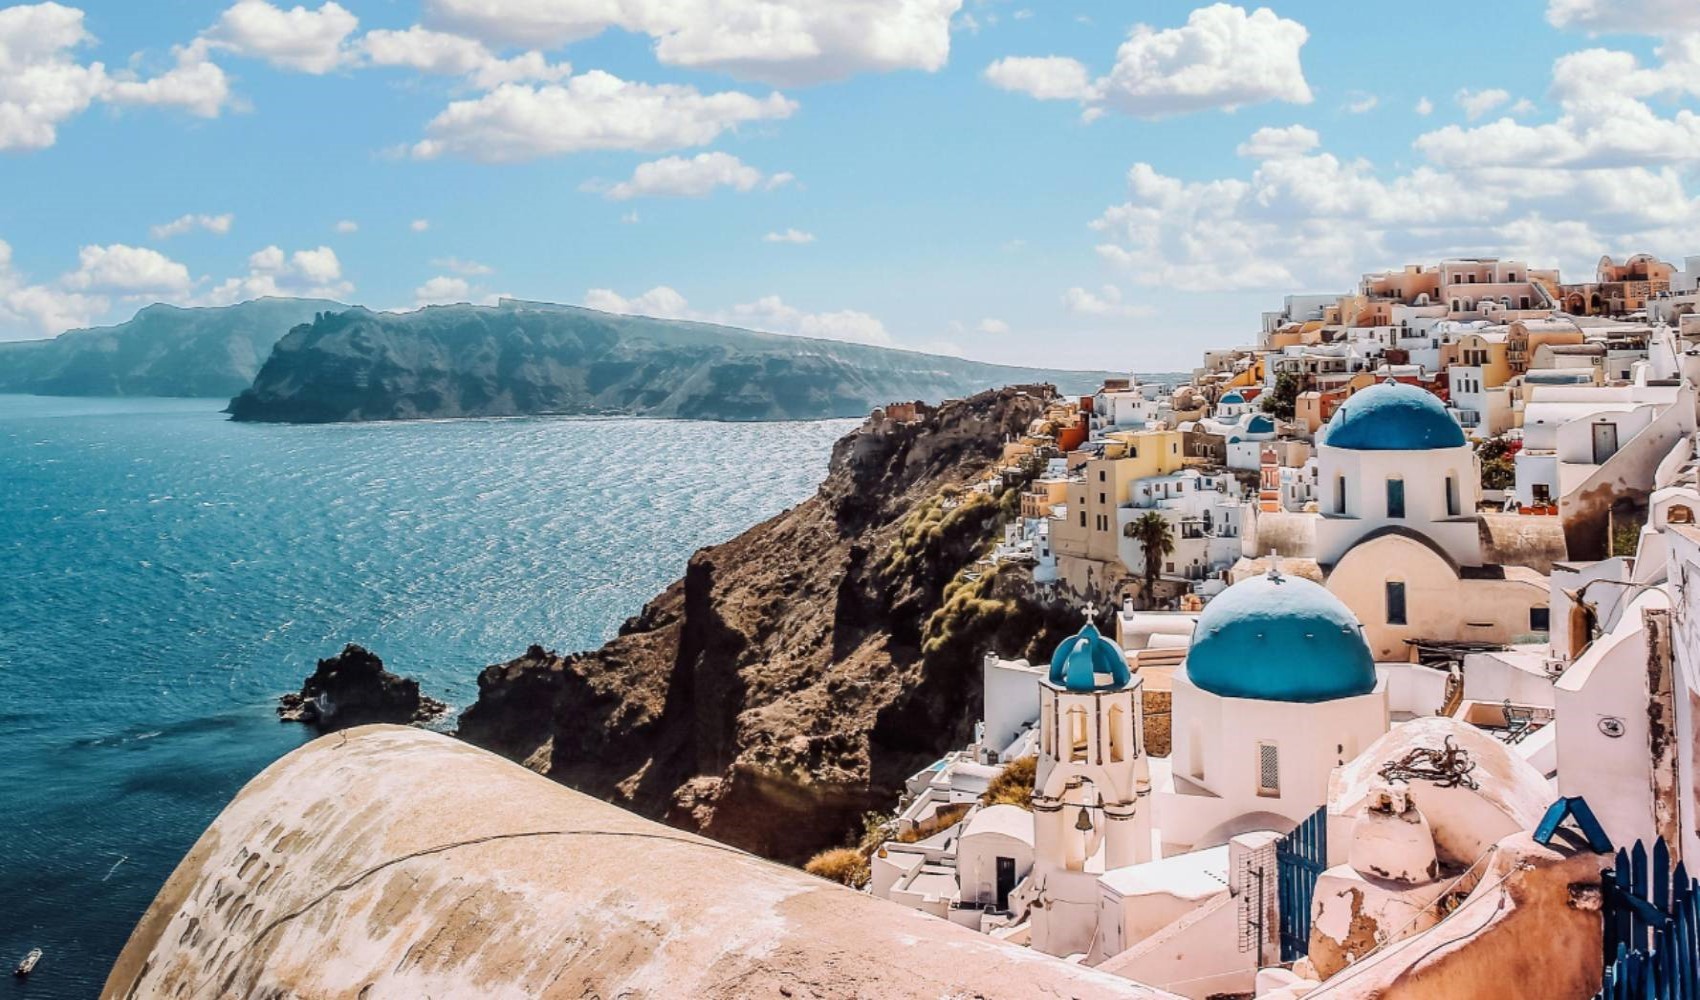 Tatilciler için güzel haber geldi: Hangi Yunan adalarına vizesiz gidileceği belli oldu